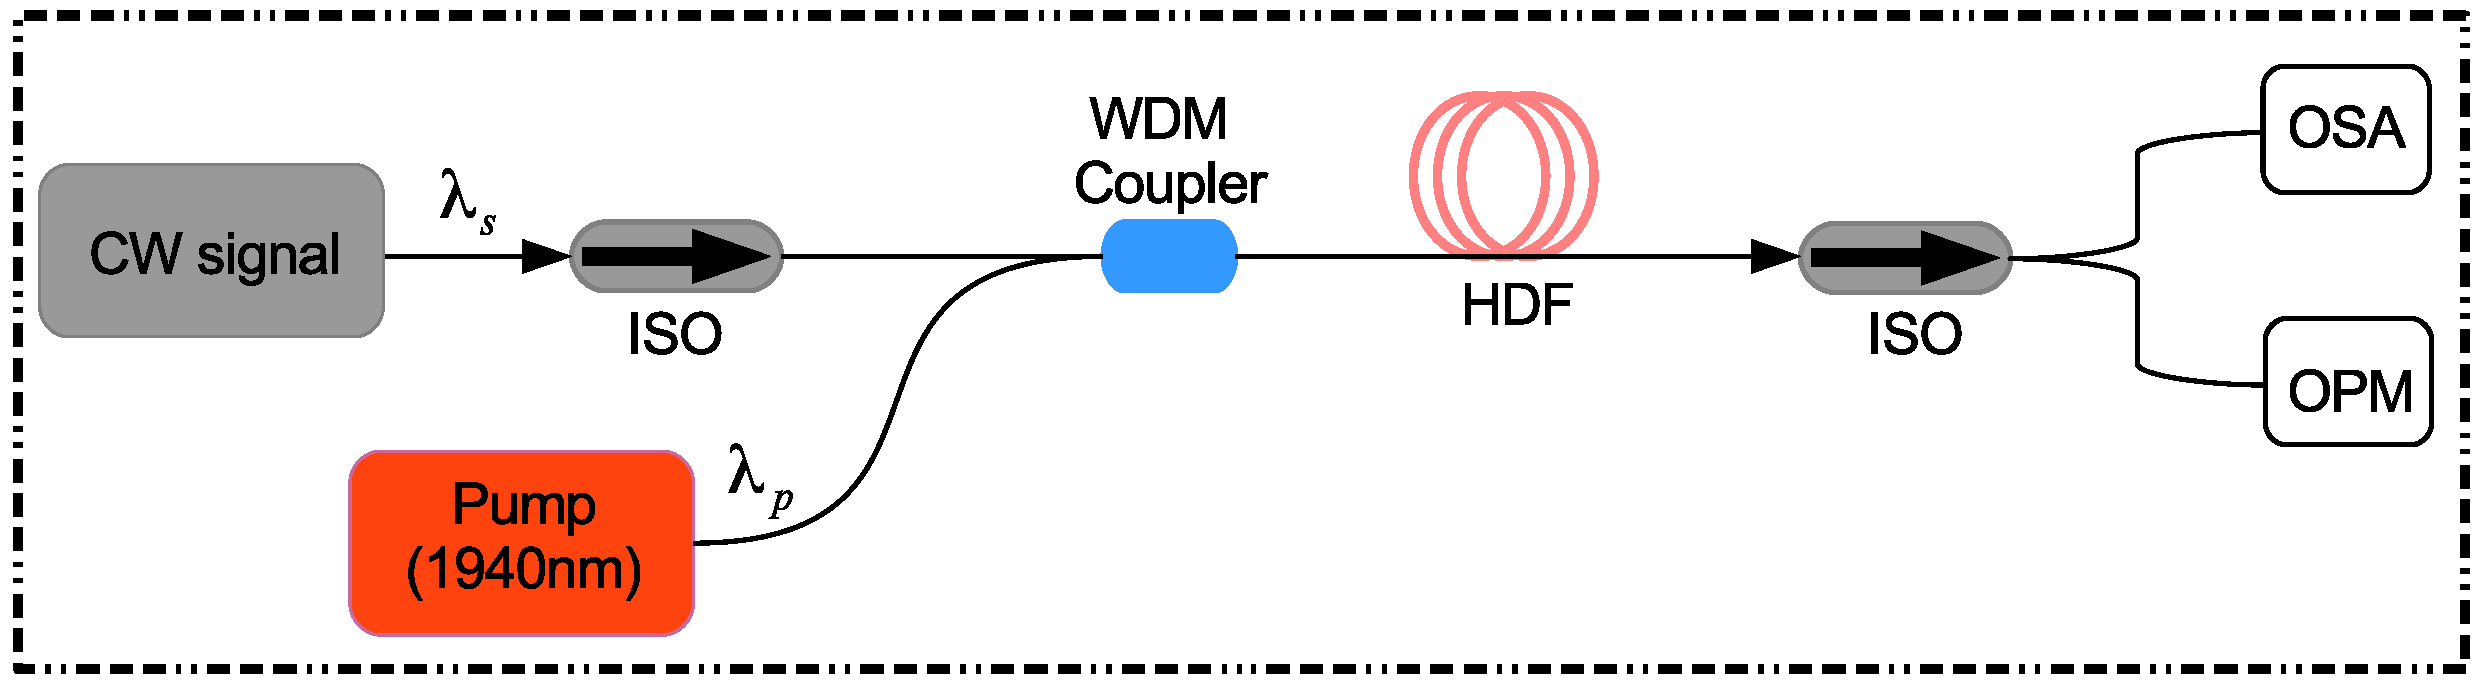 11-Schéma du laser fibré dopédopé`dopéà l'Erbium.